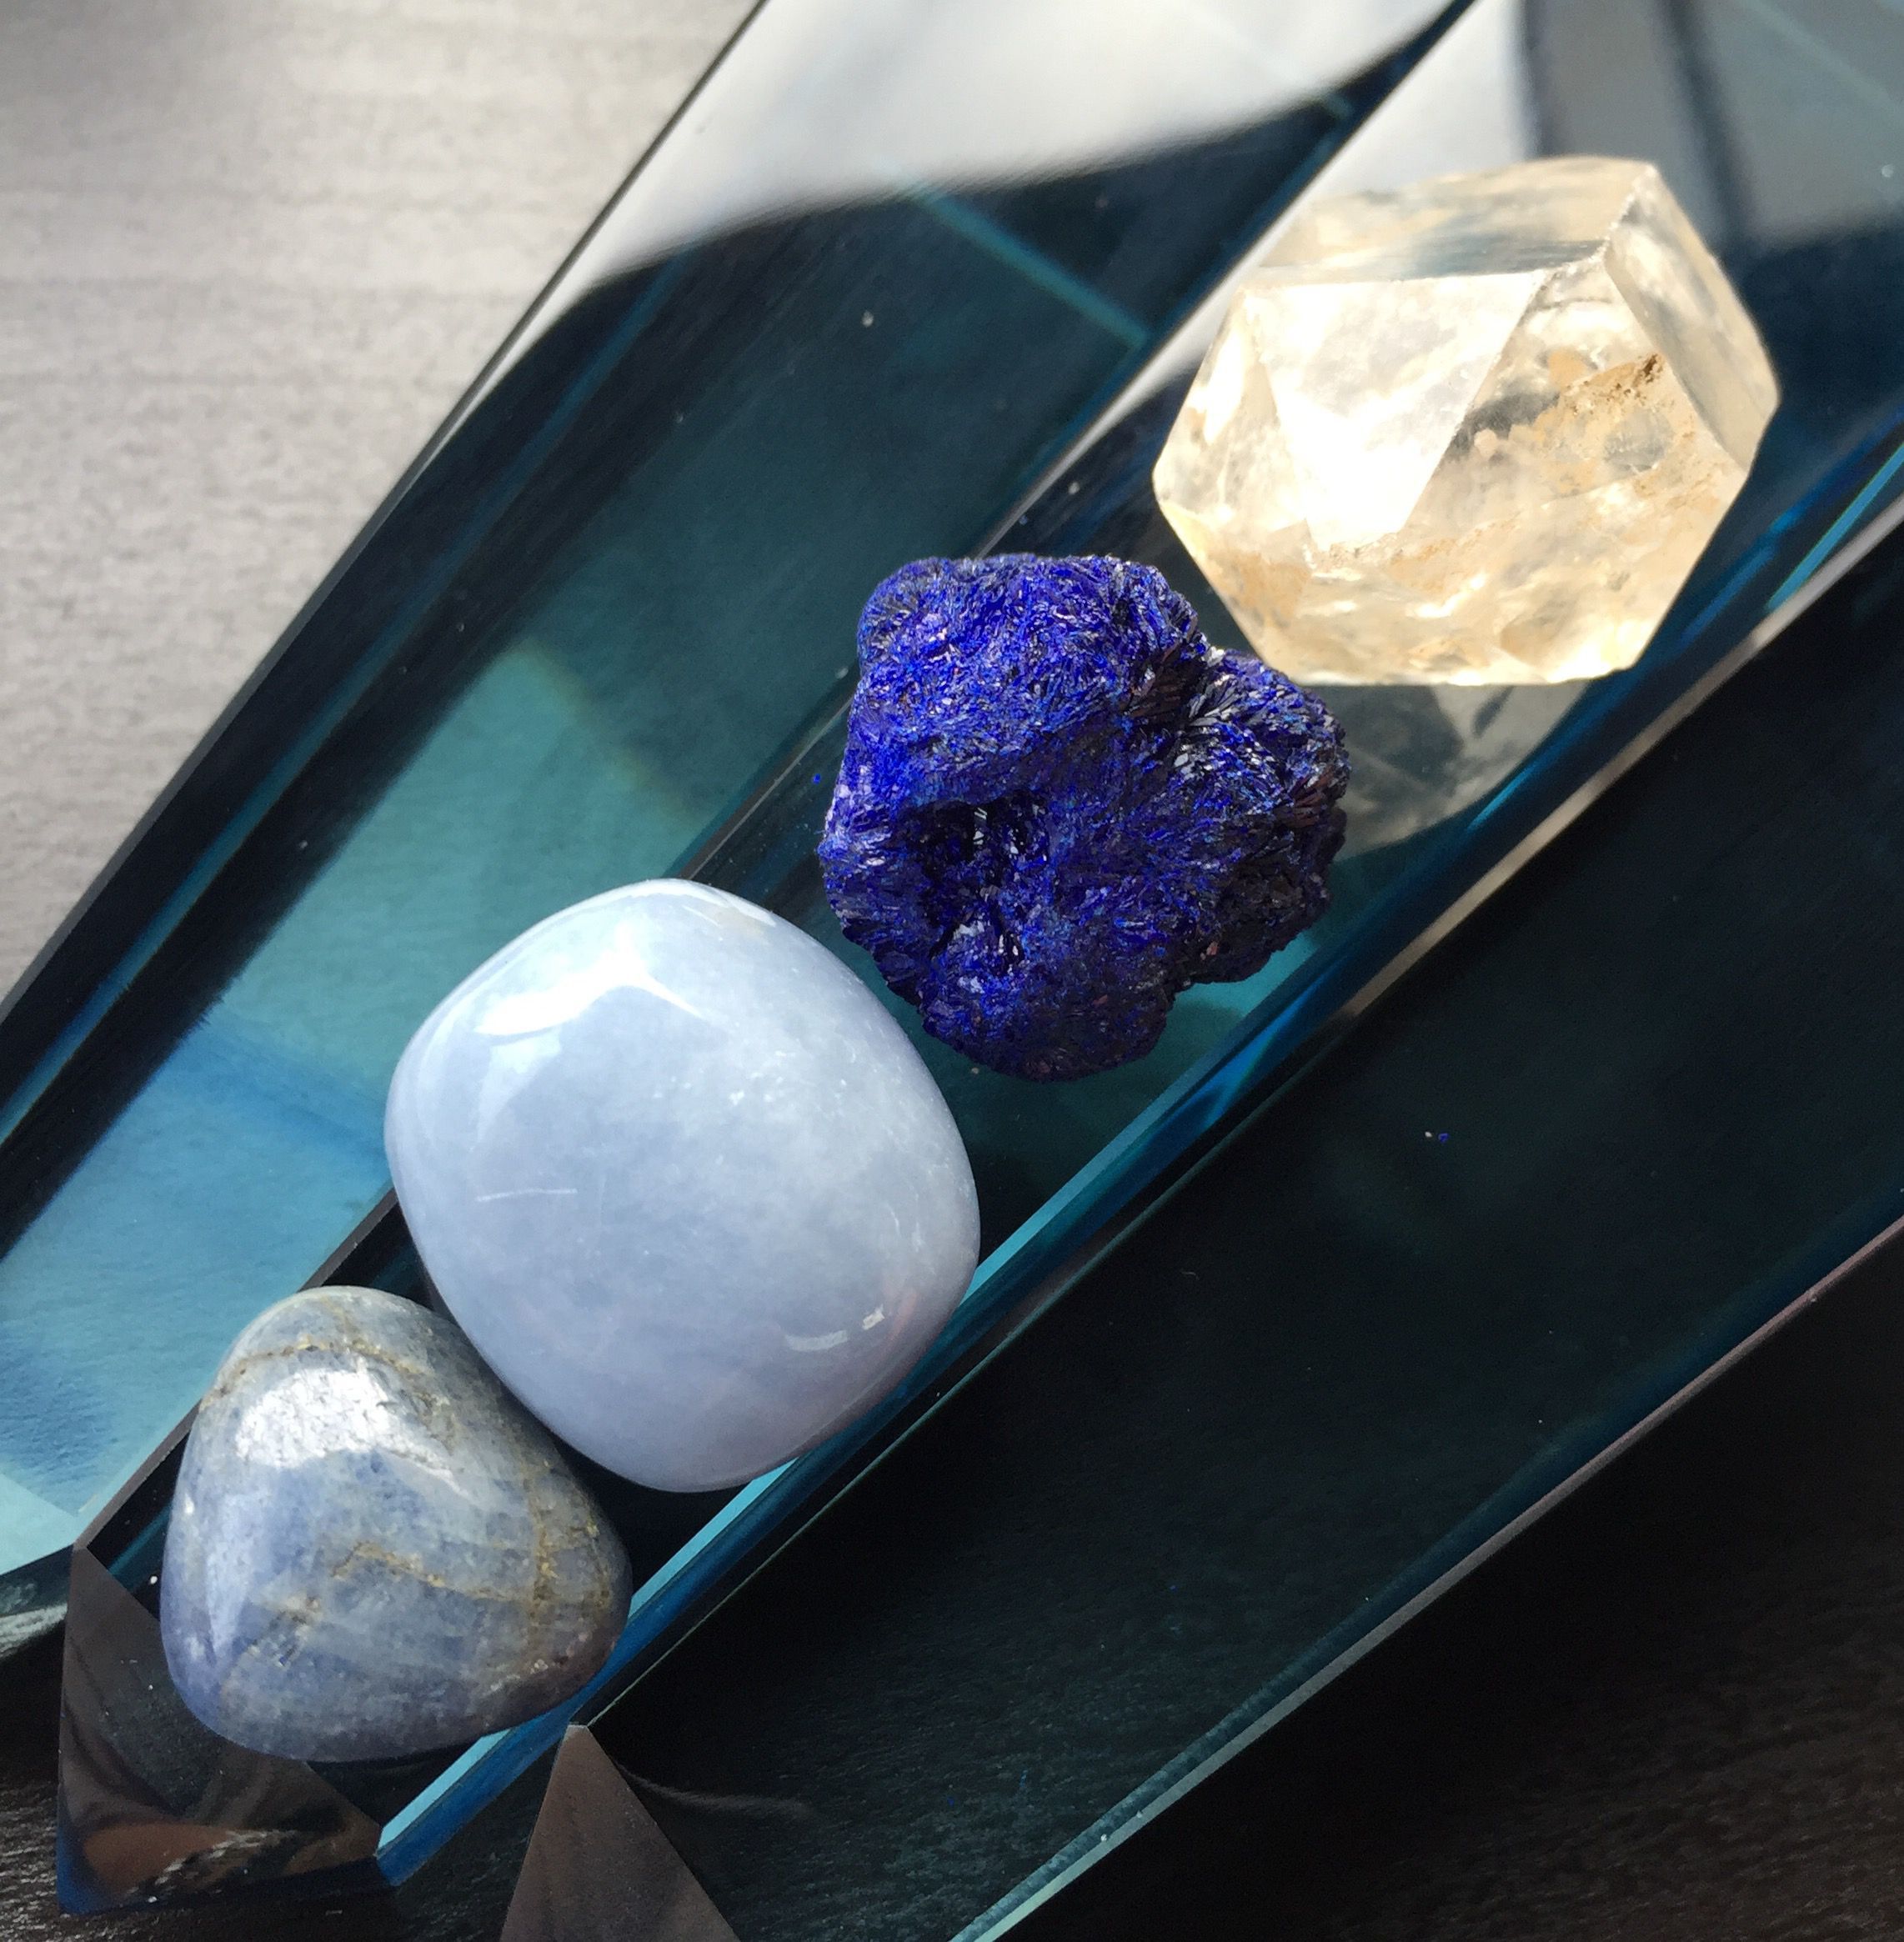 The blue stones of wisdom for deep spiritual wisdom